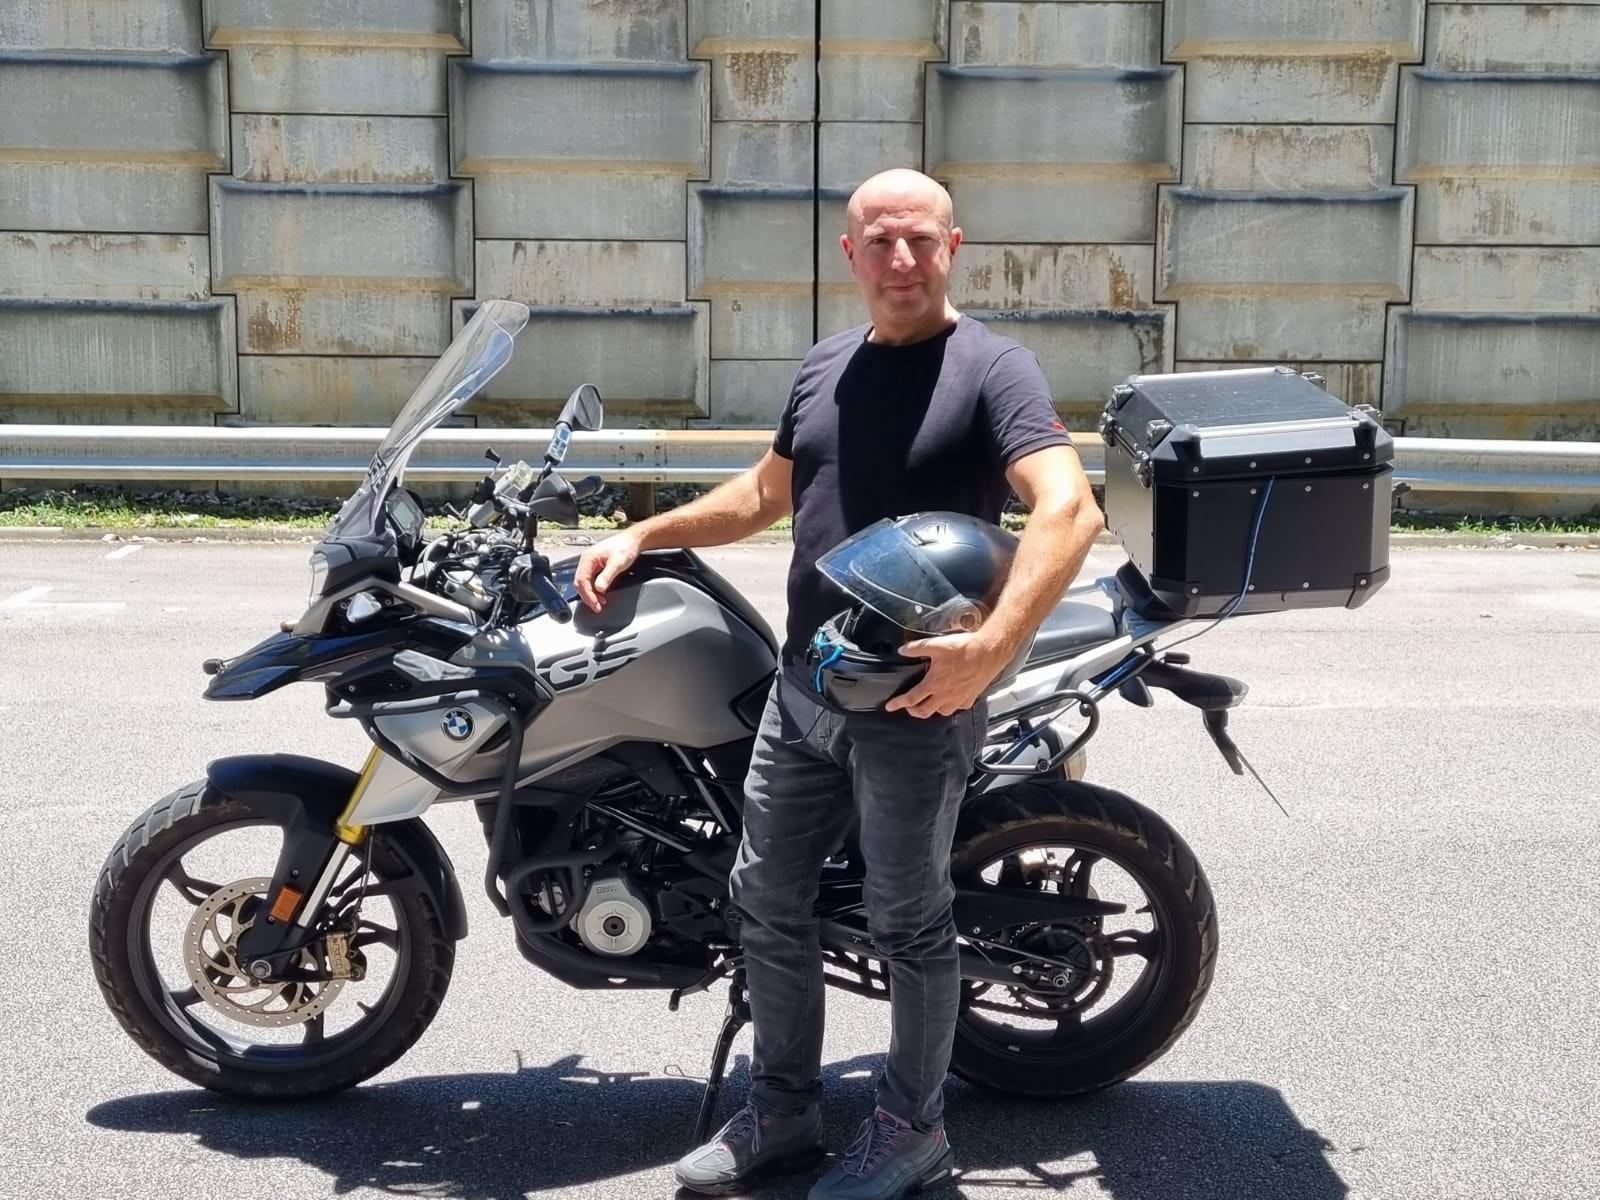 Rider Dome: Startup Singapore nhắm đến an toàn cho người giao hàng bằng xe máy